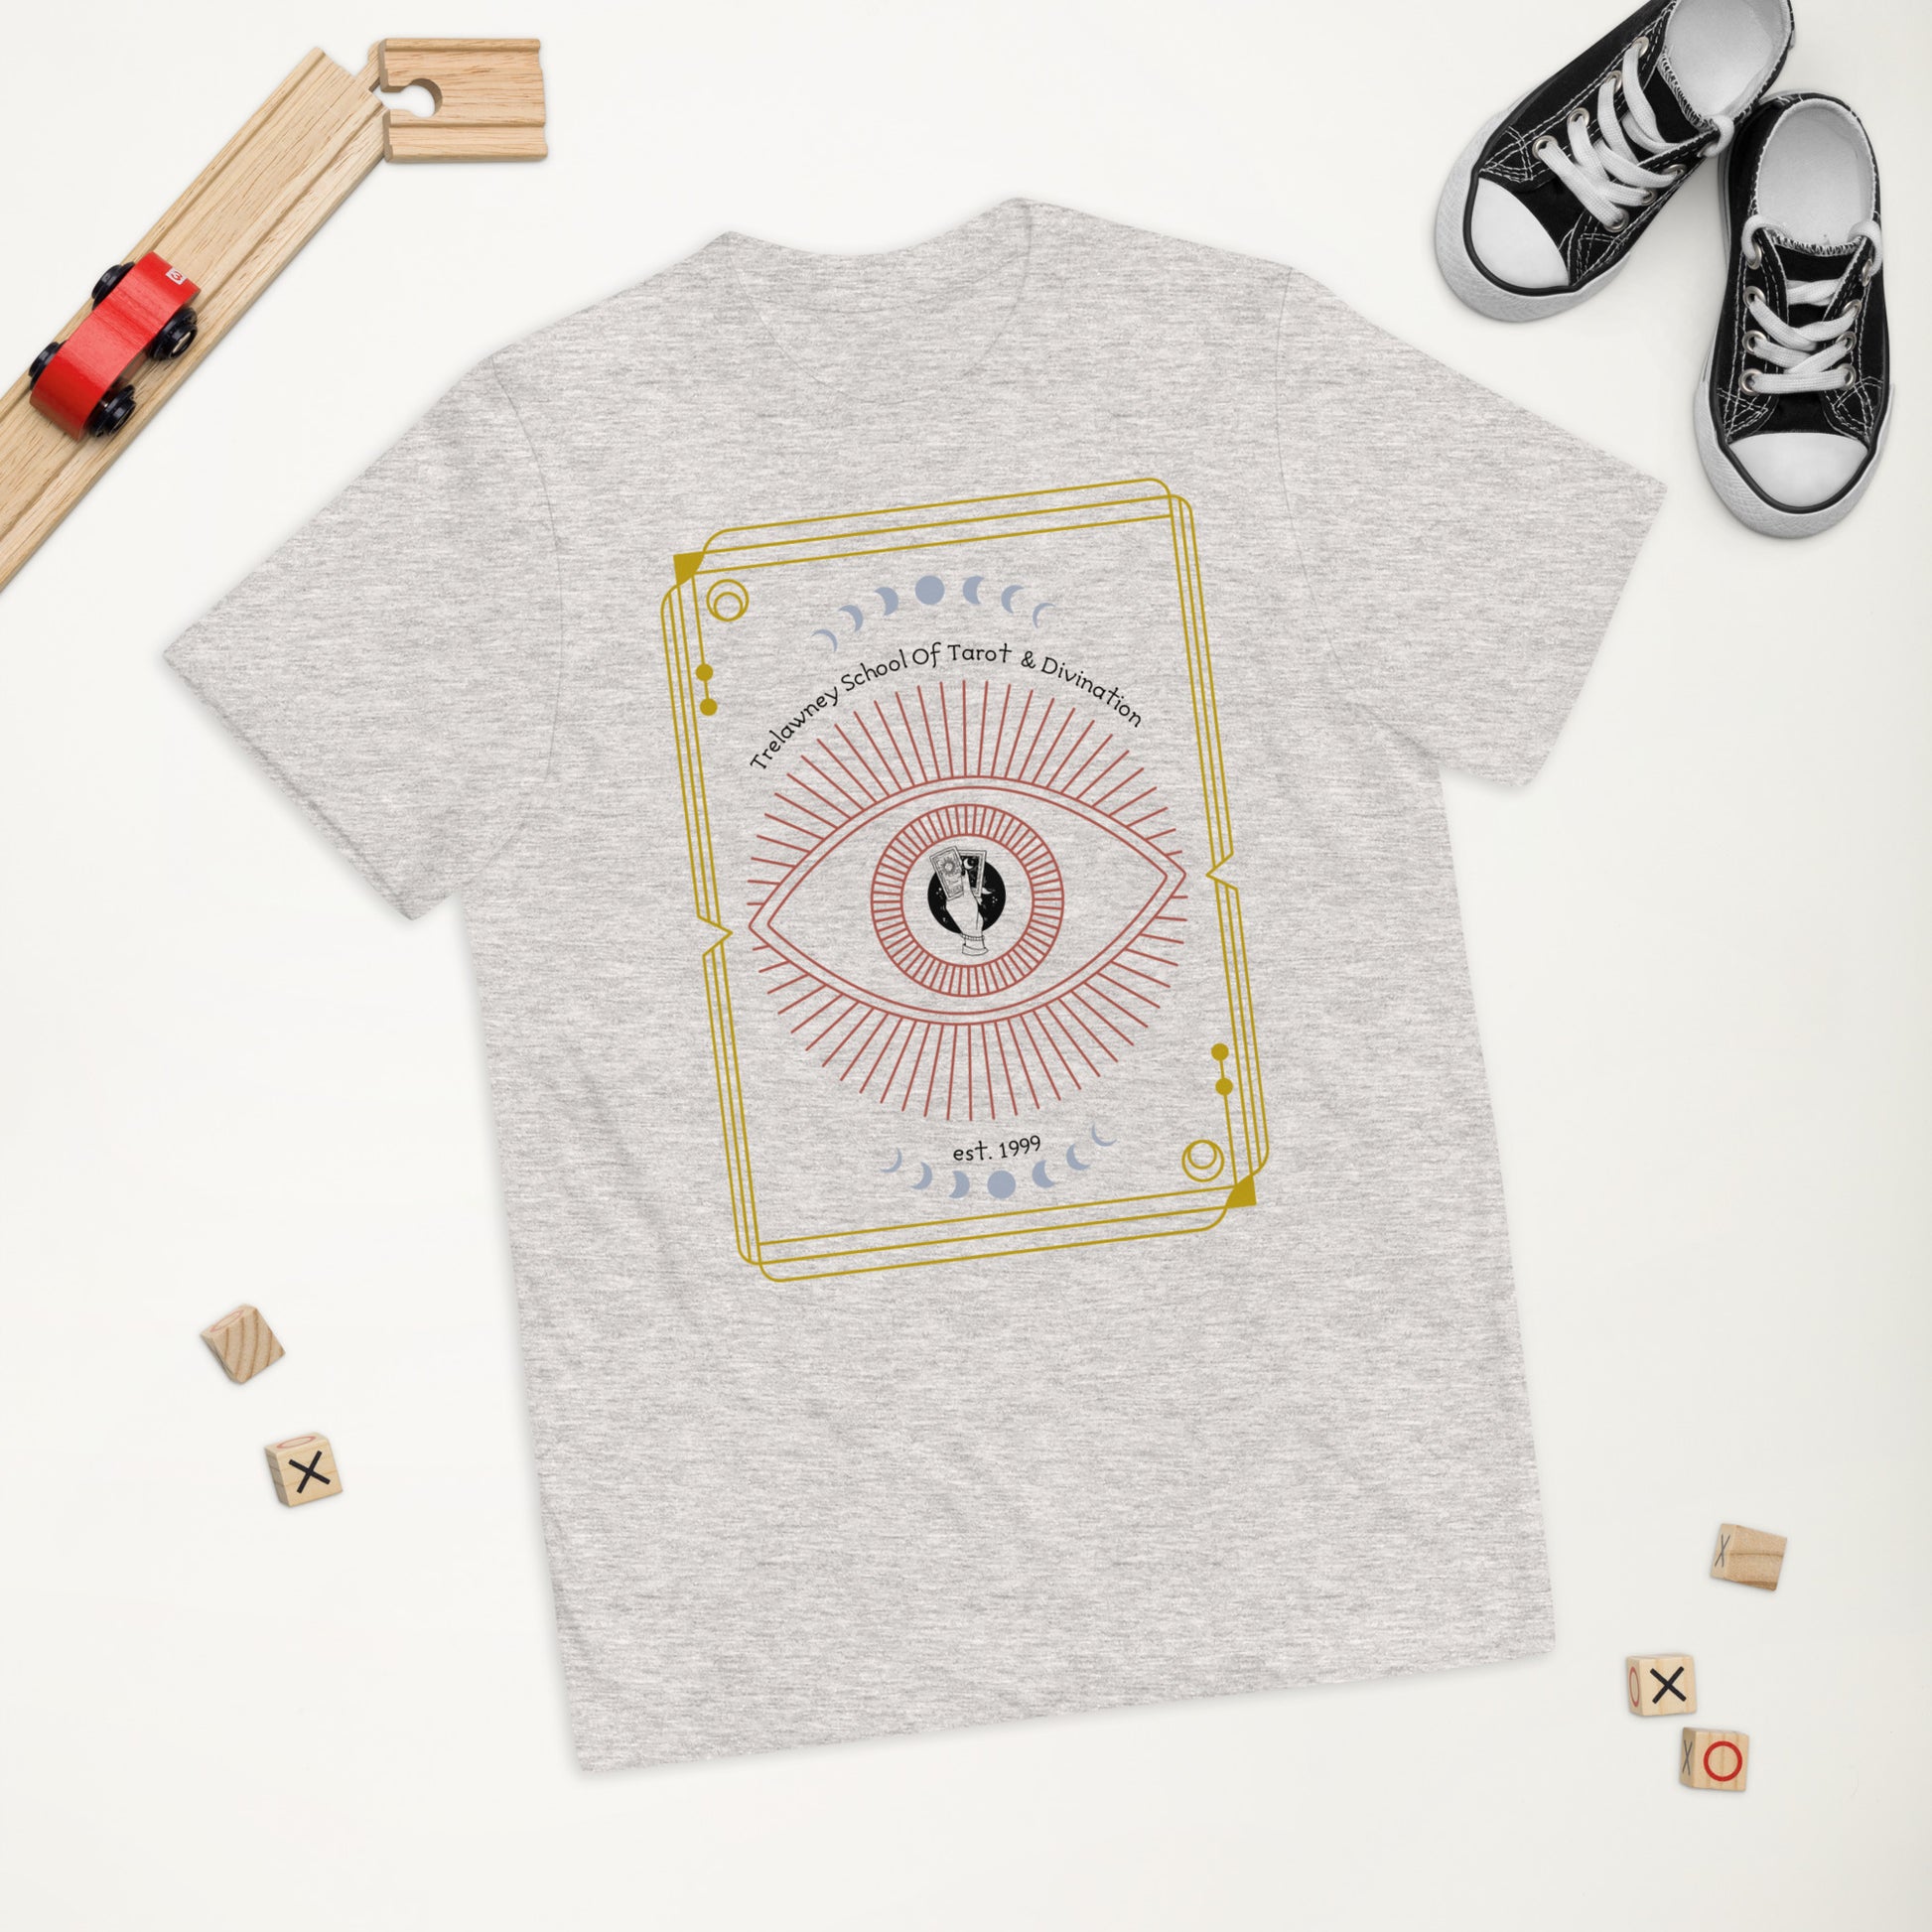 Trelawney School of Tarot and Divination Youth jersey t-shirt - A. Mandaline Art